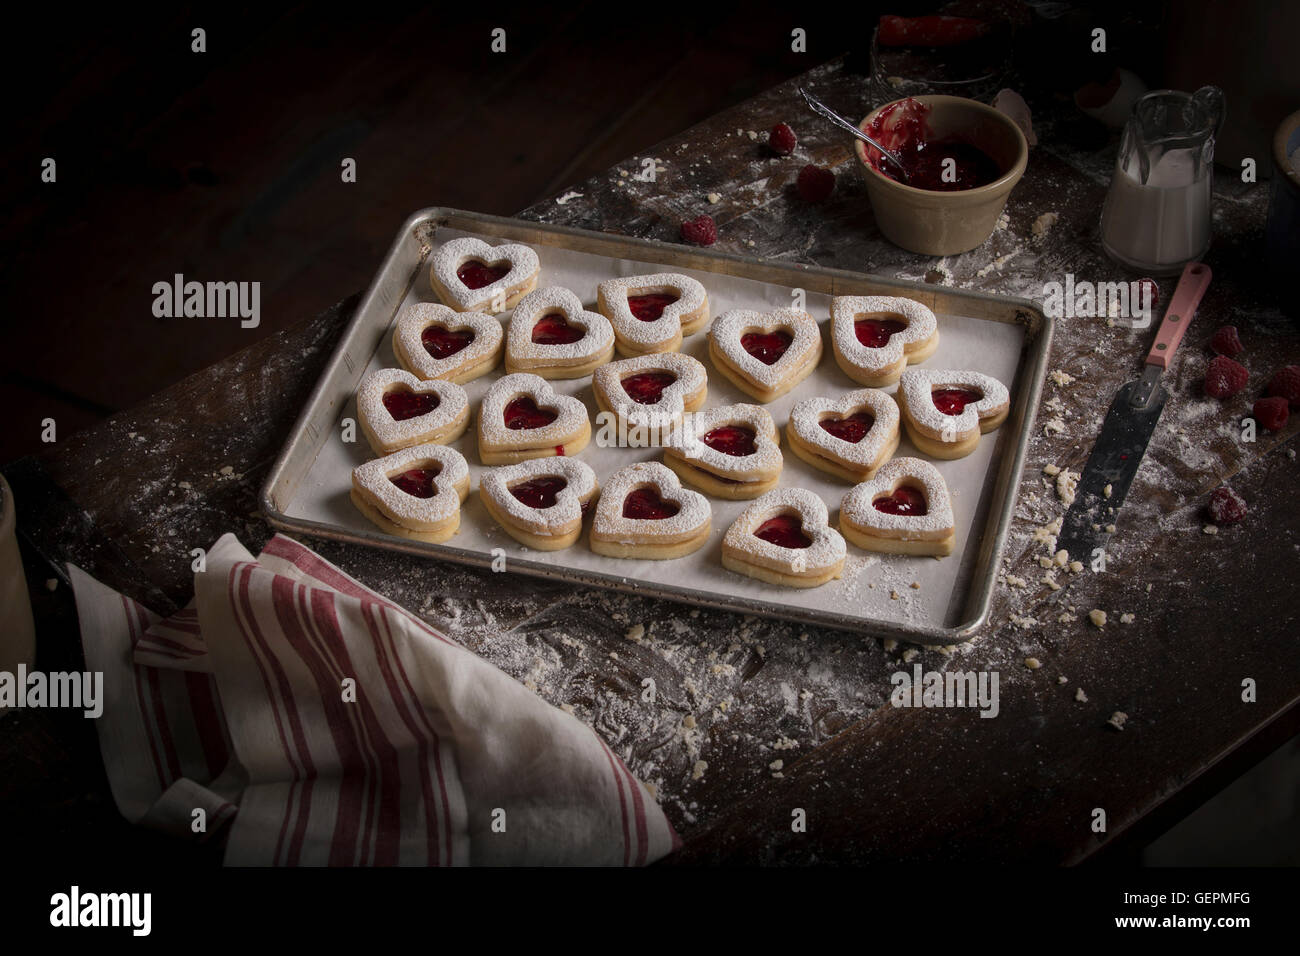 La Saint-Valentin, high angle view d'une plaque de cuisson avec des biscuits en forme de coeur. Banque D'Images